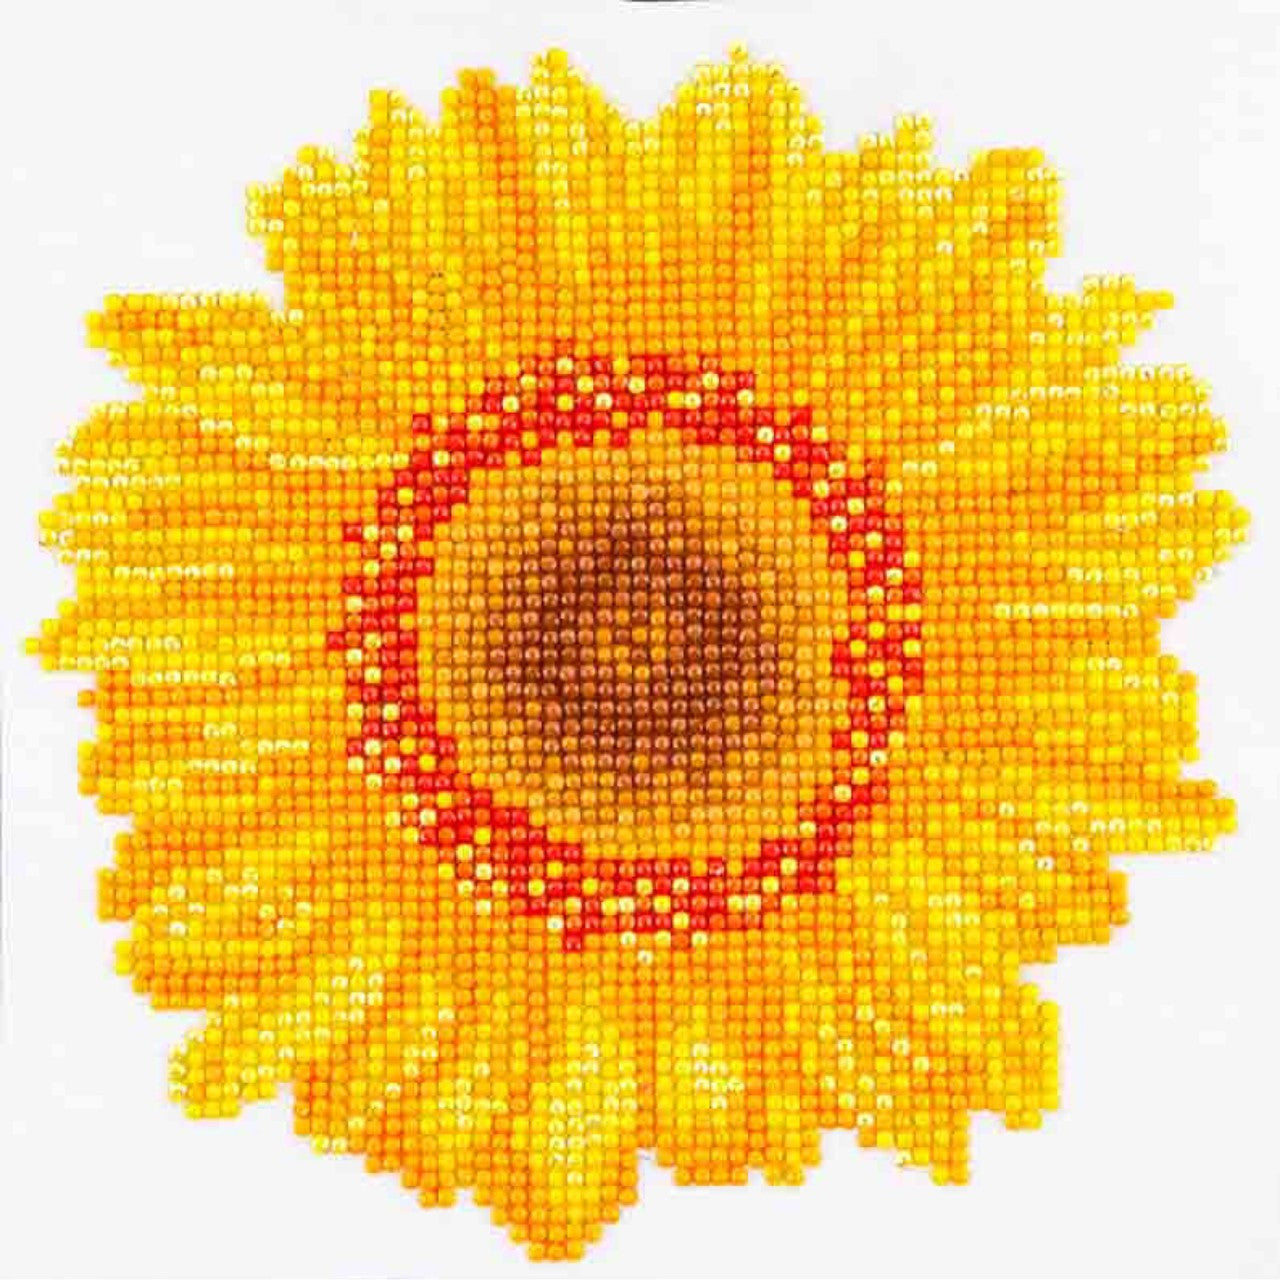 Diamond Dotz Happy Day Sunflower